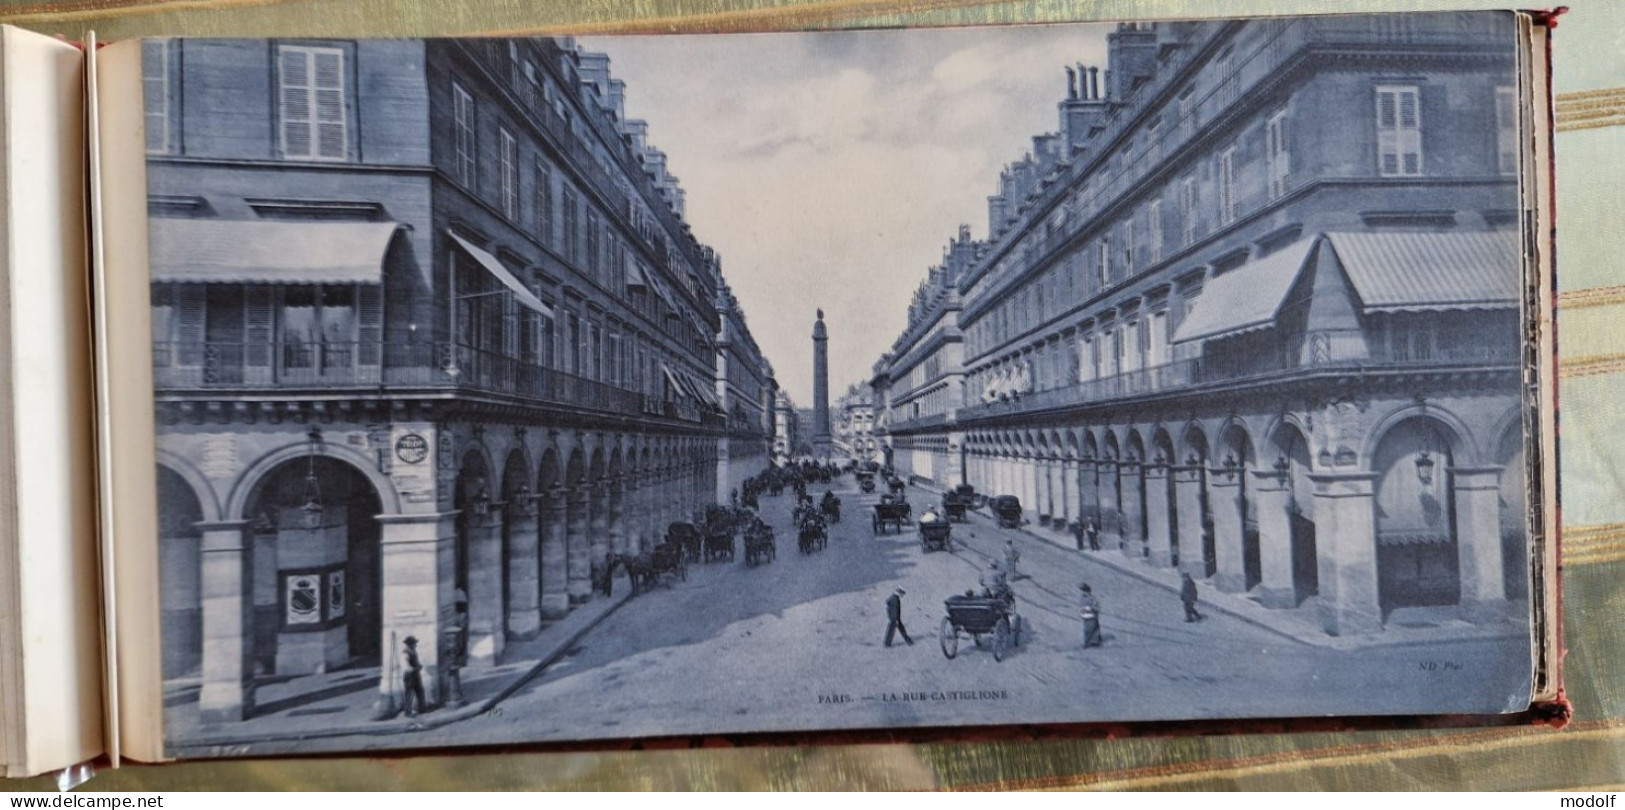 CPA - 75 - Livret (30x15cm) contenant 25 vues panoramiques de Paris en 1906